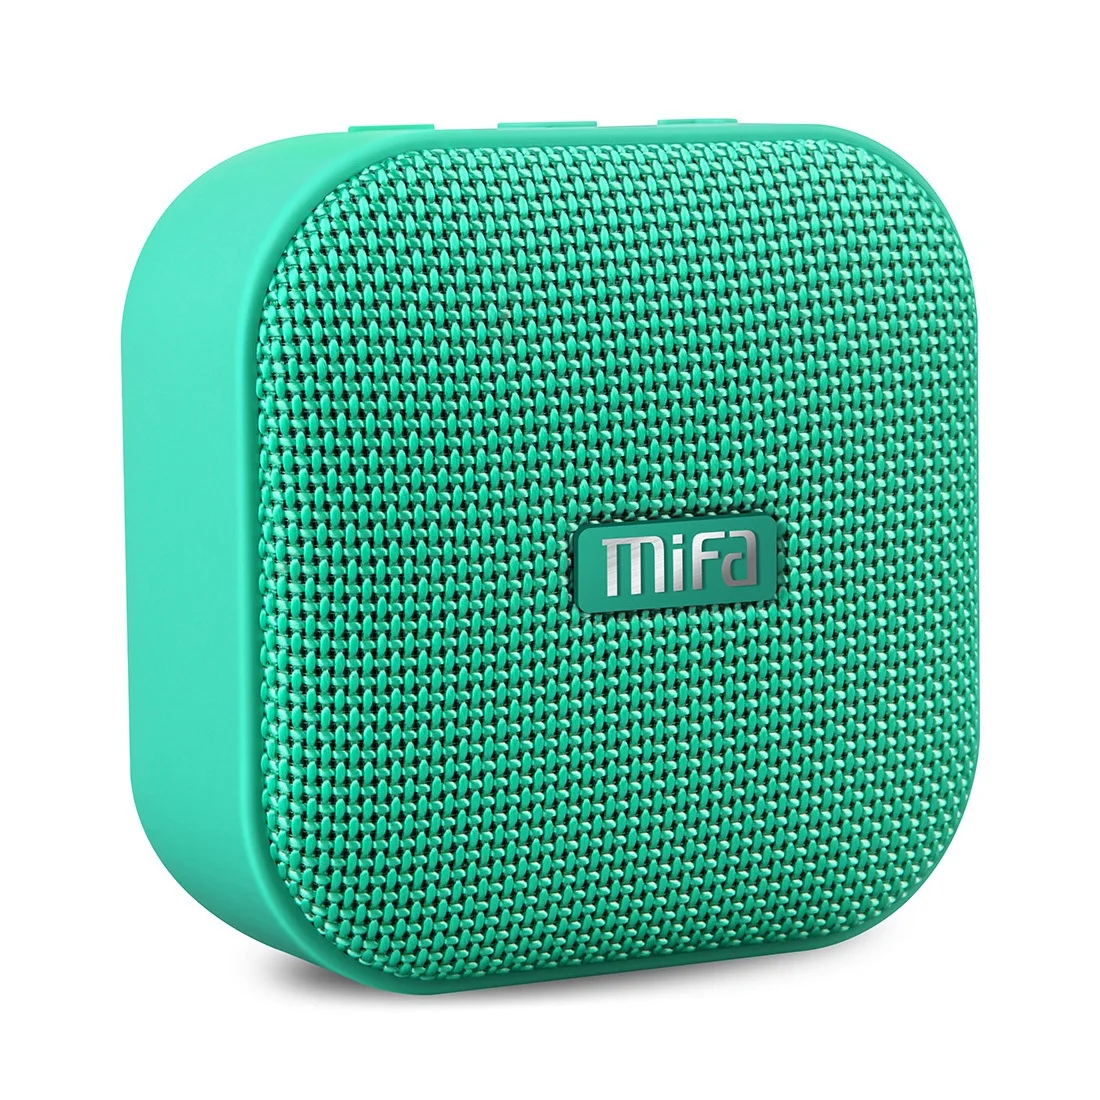 Mifa Беспроводной Bluetooth Динамик Водонепроницаемый мини Портативный музыке стерео Открытый Handfree Динамик для iPhone для samsung телефоны